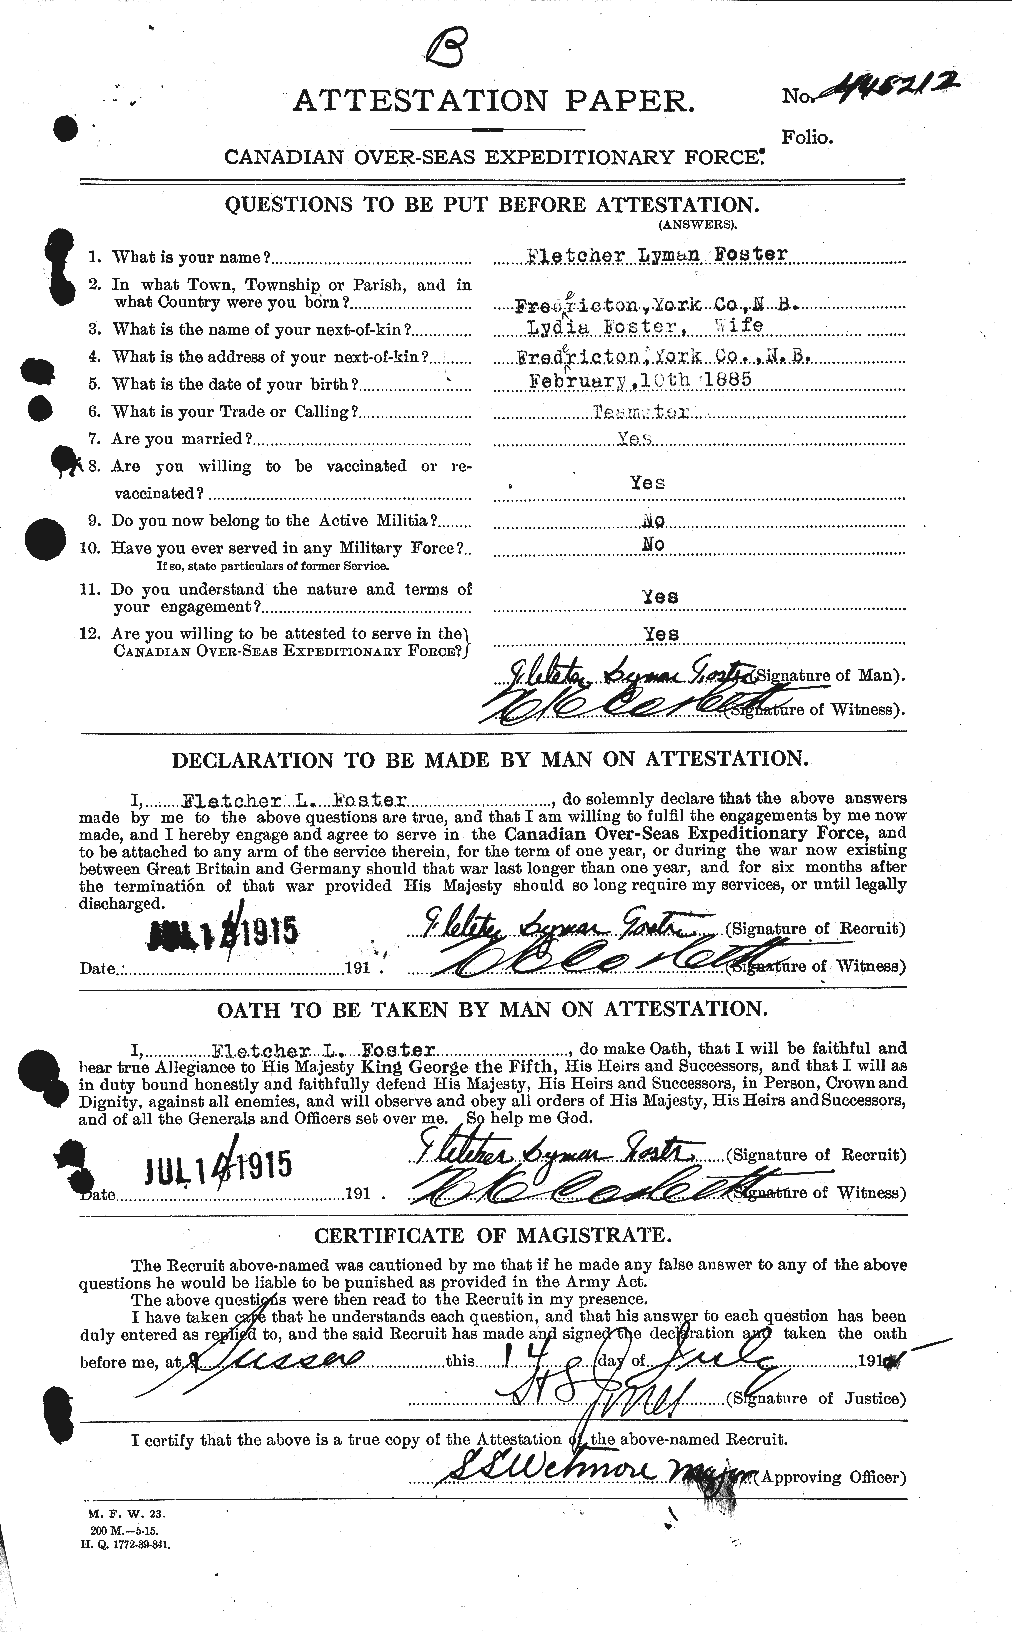 Dossiers du Personnel de la Première Guerre mondiale - CEC 330610a